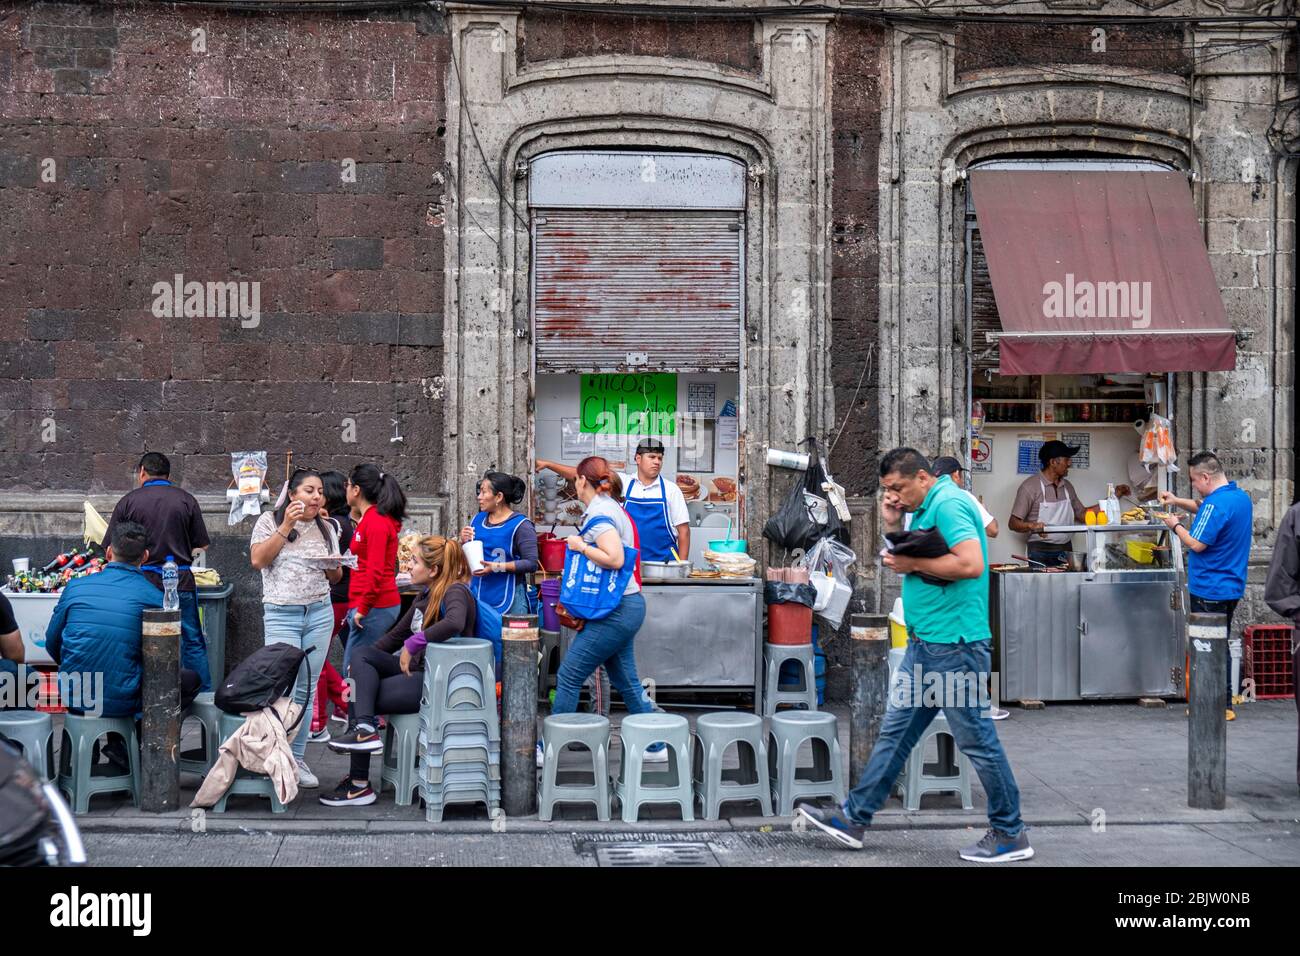 Scène de rue animée avec vendeurs et foules tacites, centro histórico, Mexico, Mexique Banque D'Images